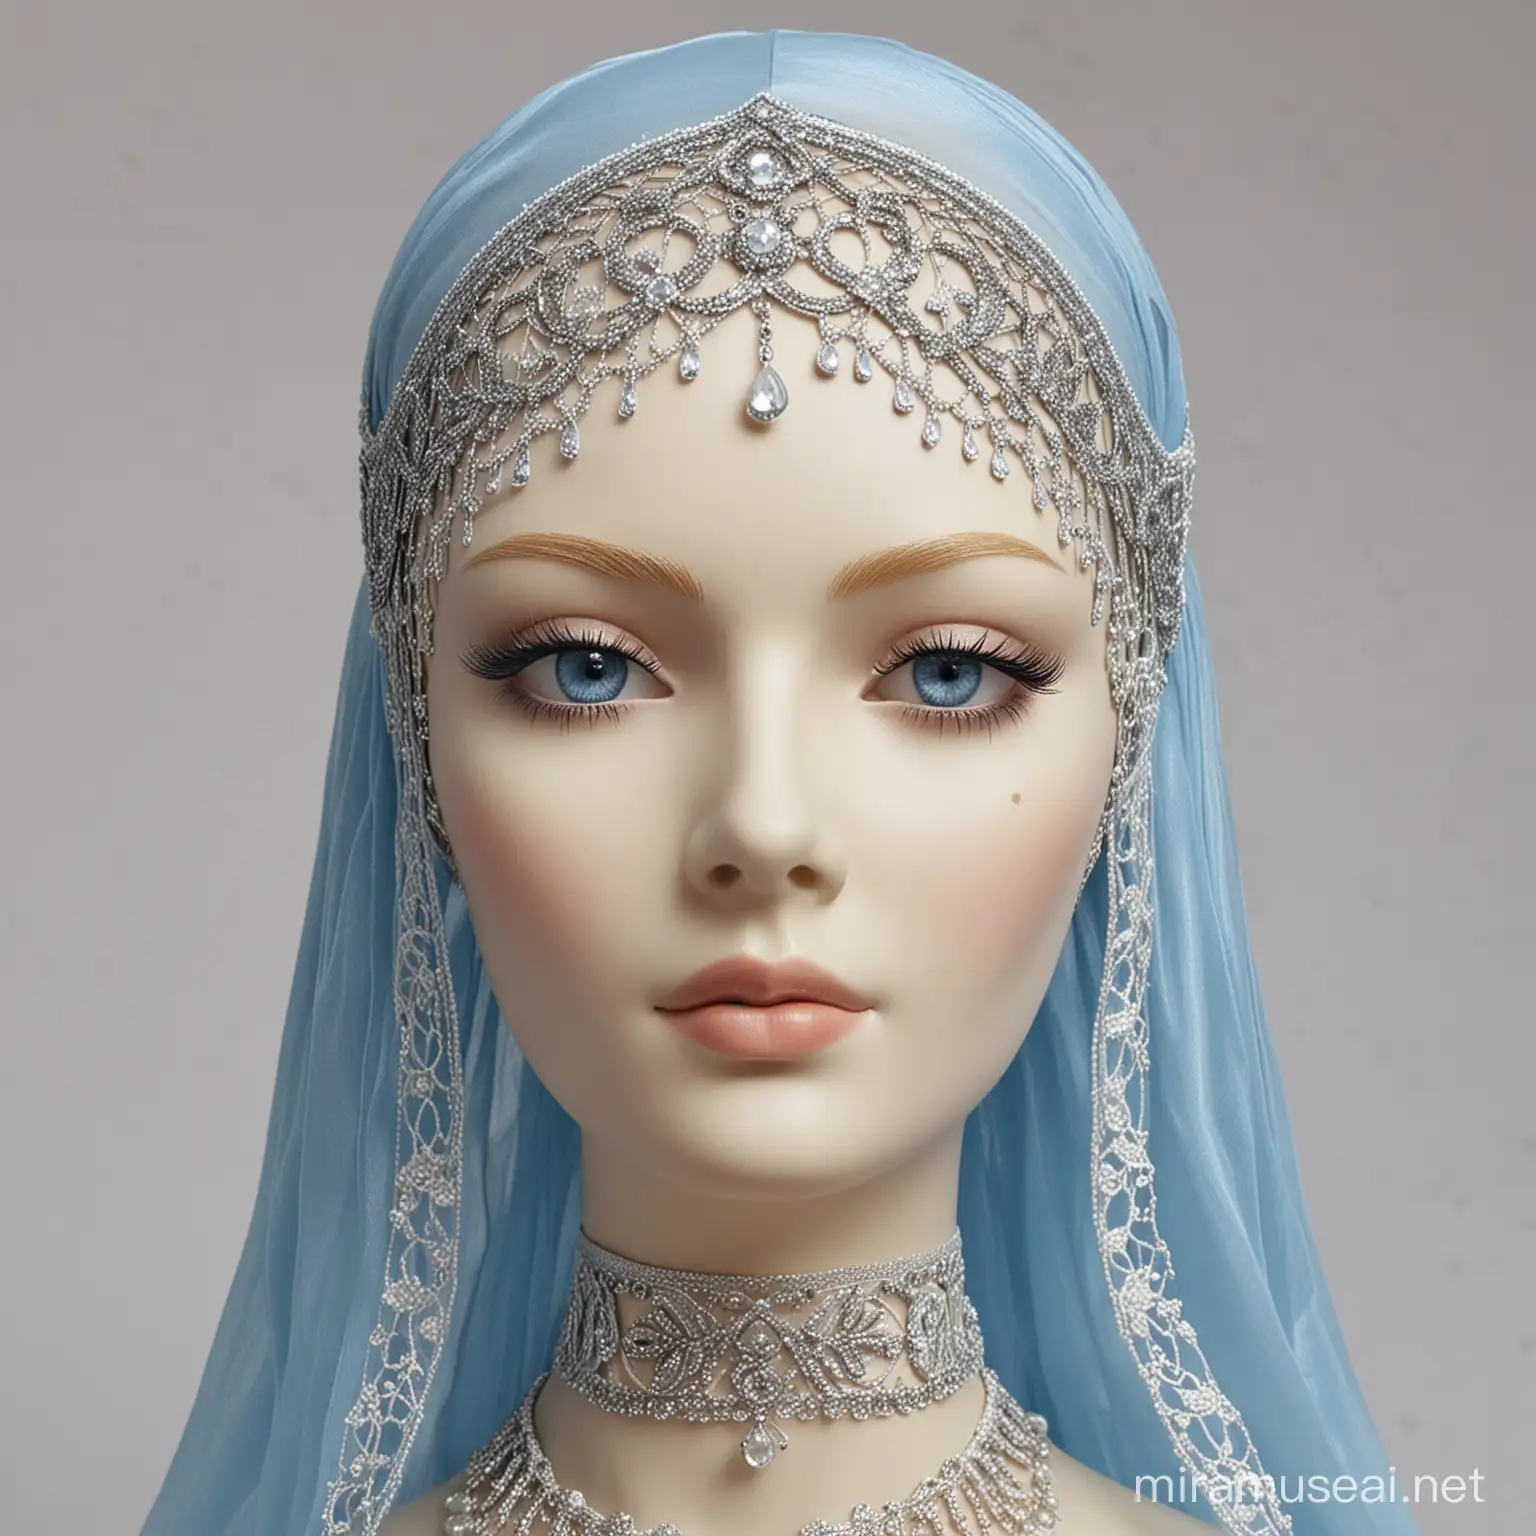 Blue veil. Silver detail. Dressmaker mannequin head. Imperial. Lace.